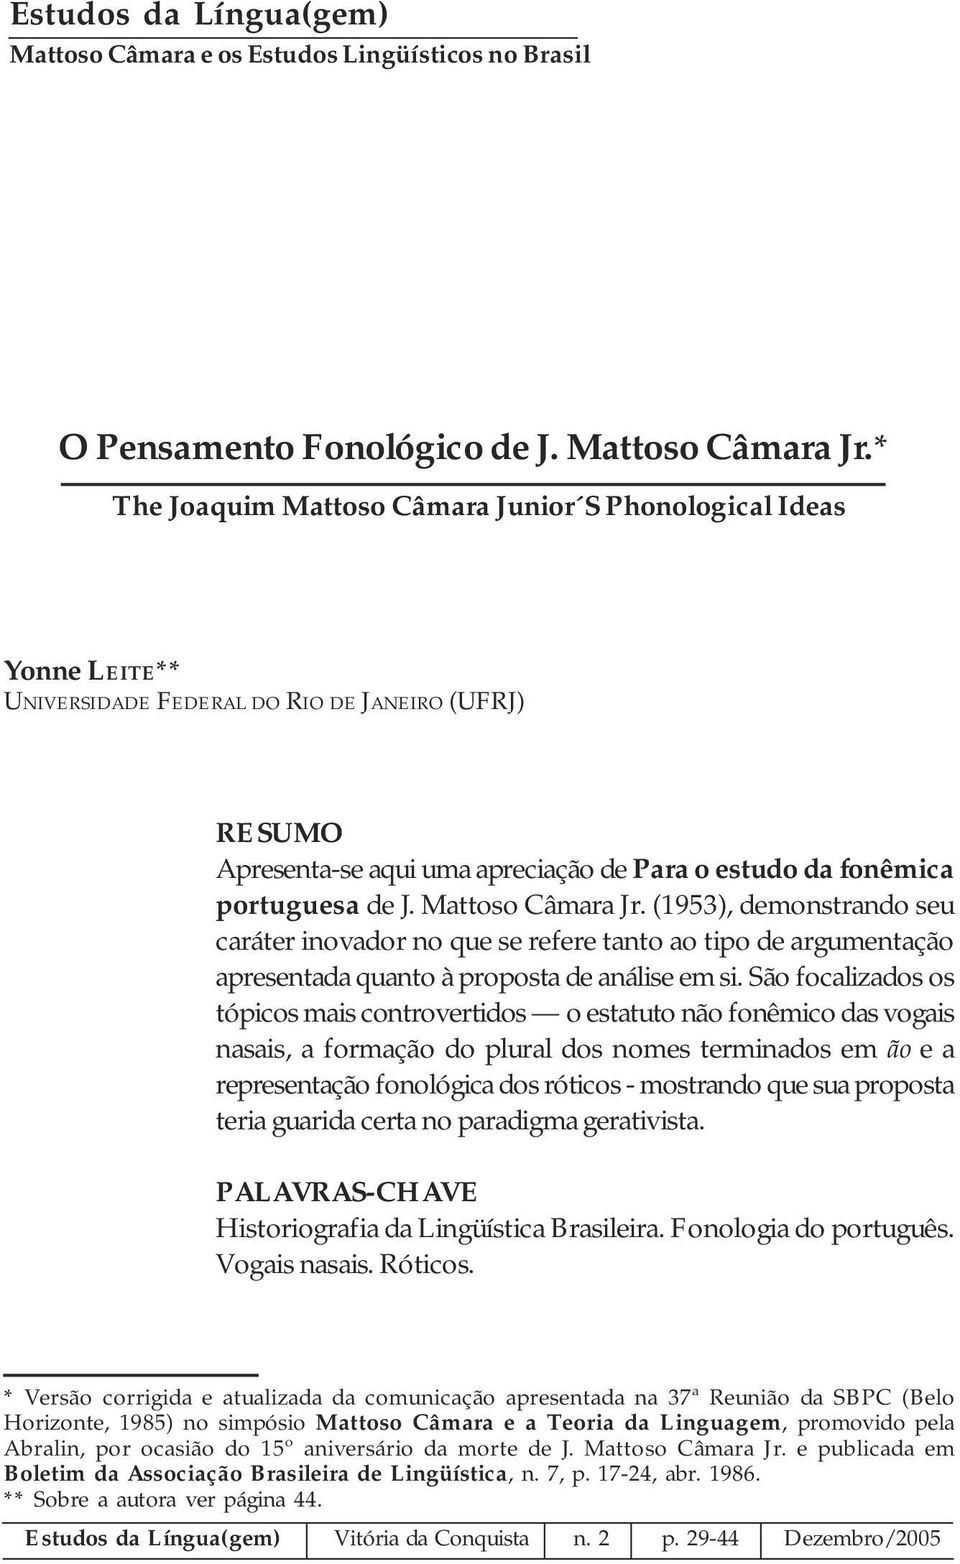 J. Mattoso Câmara Jr. (1953), demonstrando seu caráter inovador no que se refere tanto ao tipo de argumentação apresentada quanto à proposta de análise em si.